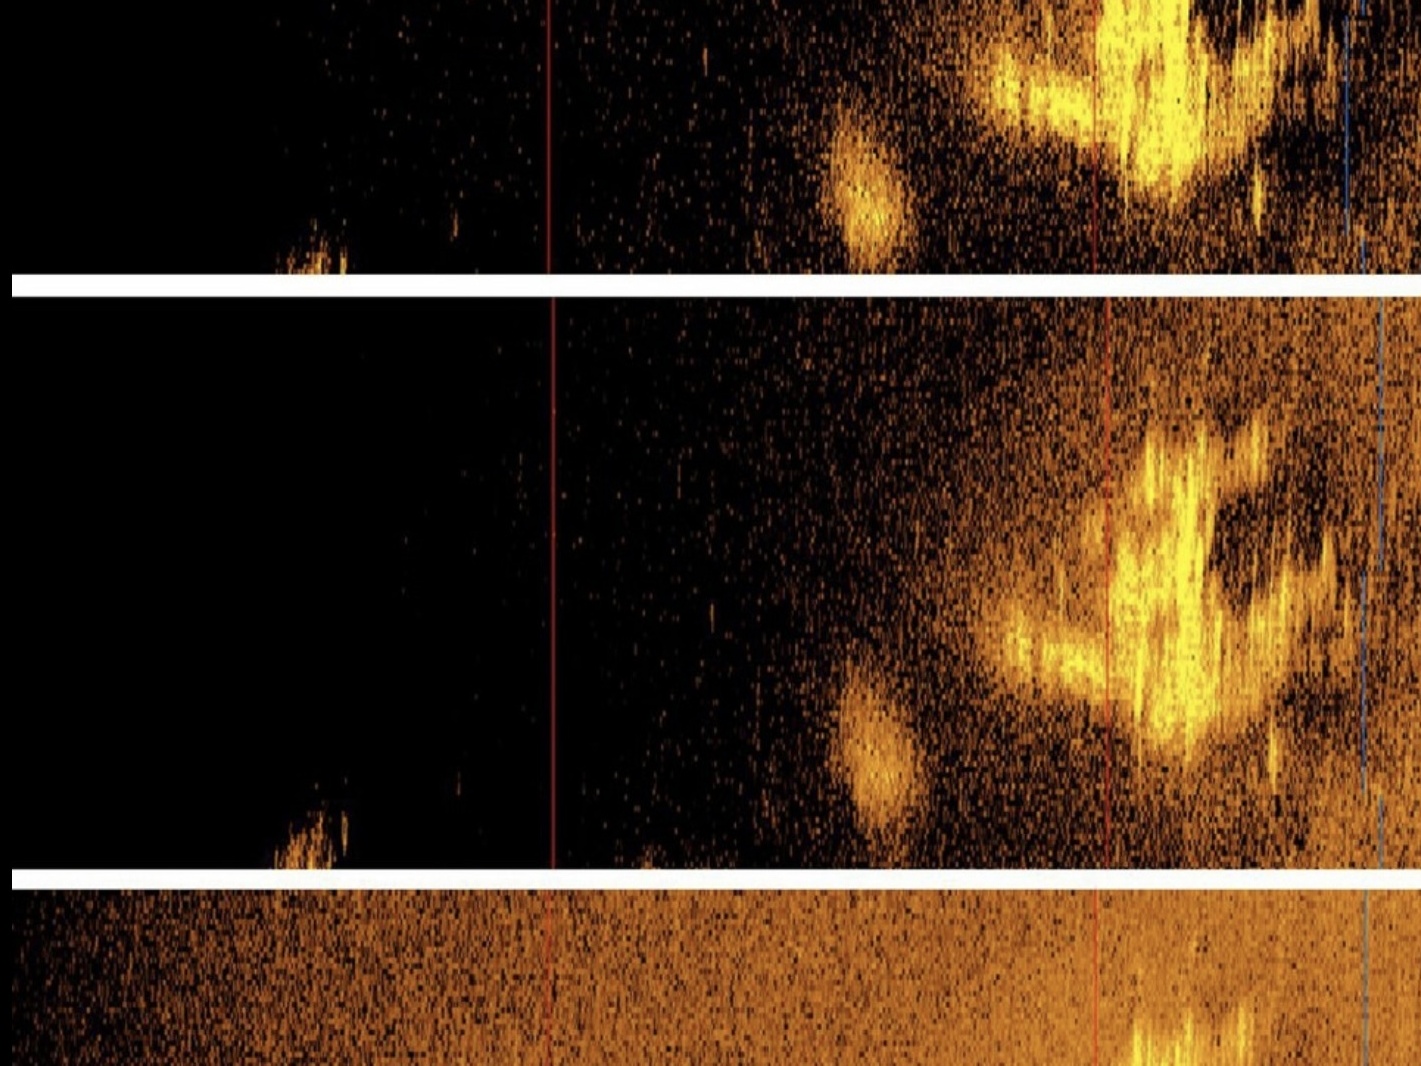 a sonar image